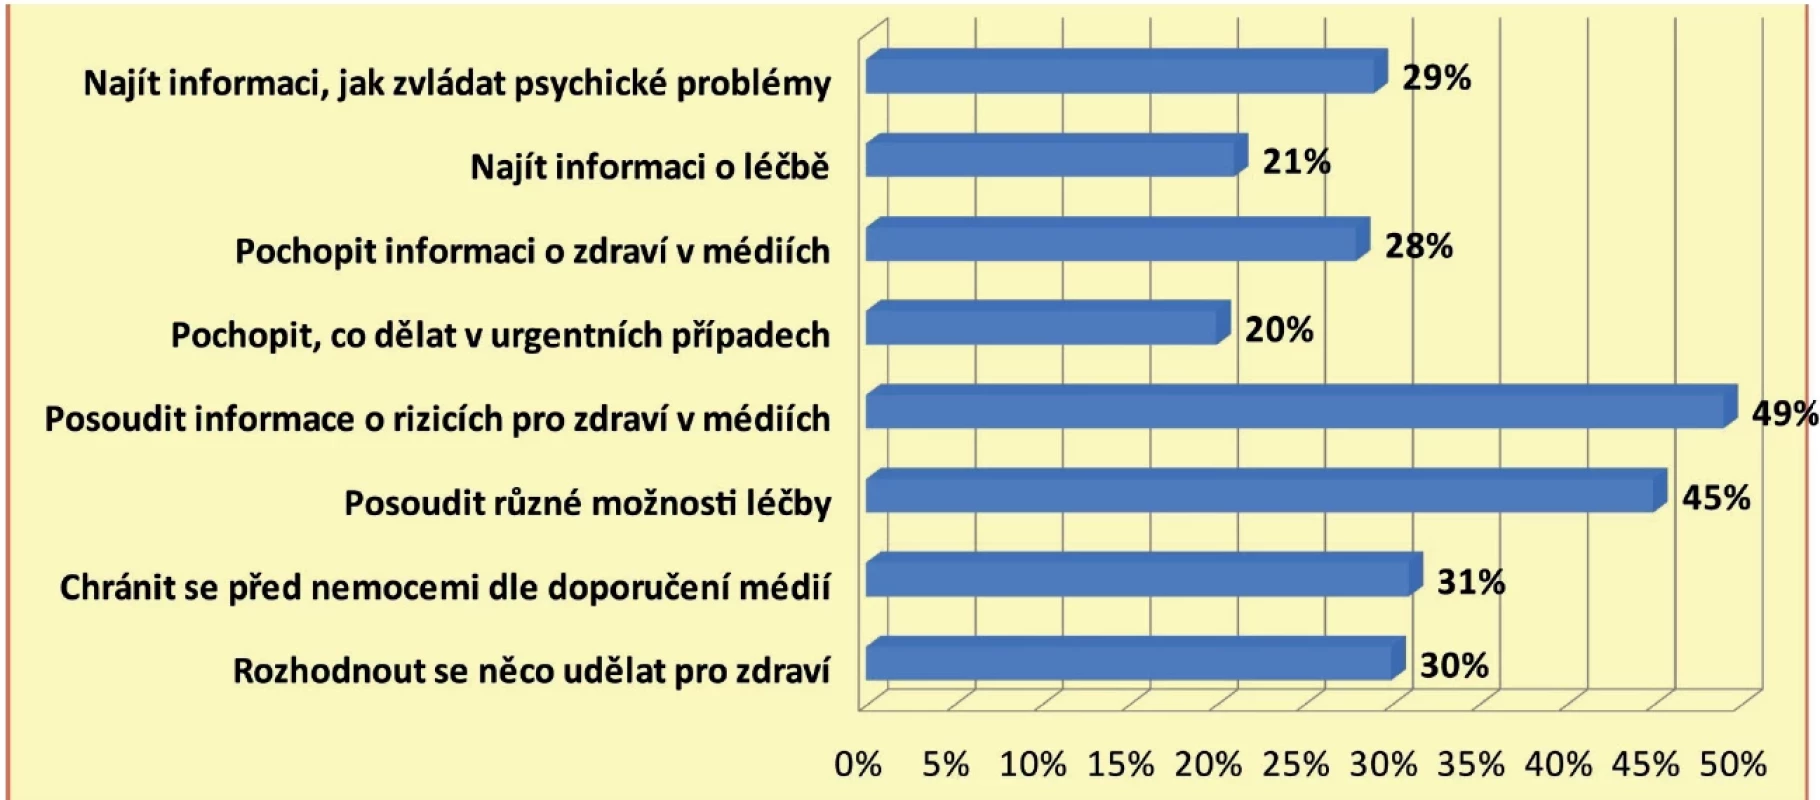 Položky s nejčastější frekvencí odpovědí „obtížné“ a „velmi obtížné“ ve 4 oblastech reprezentujících fáze práce s informacemi
u respondentů v Česku